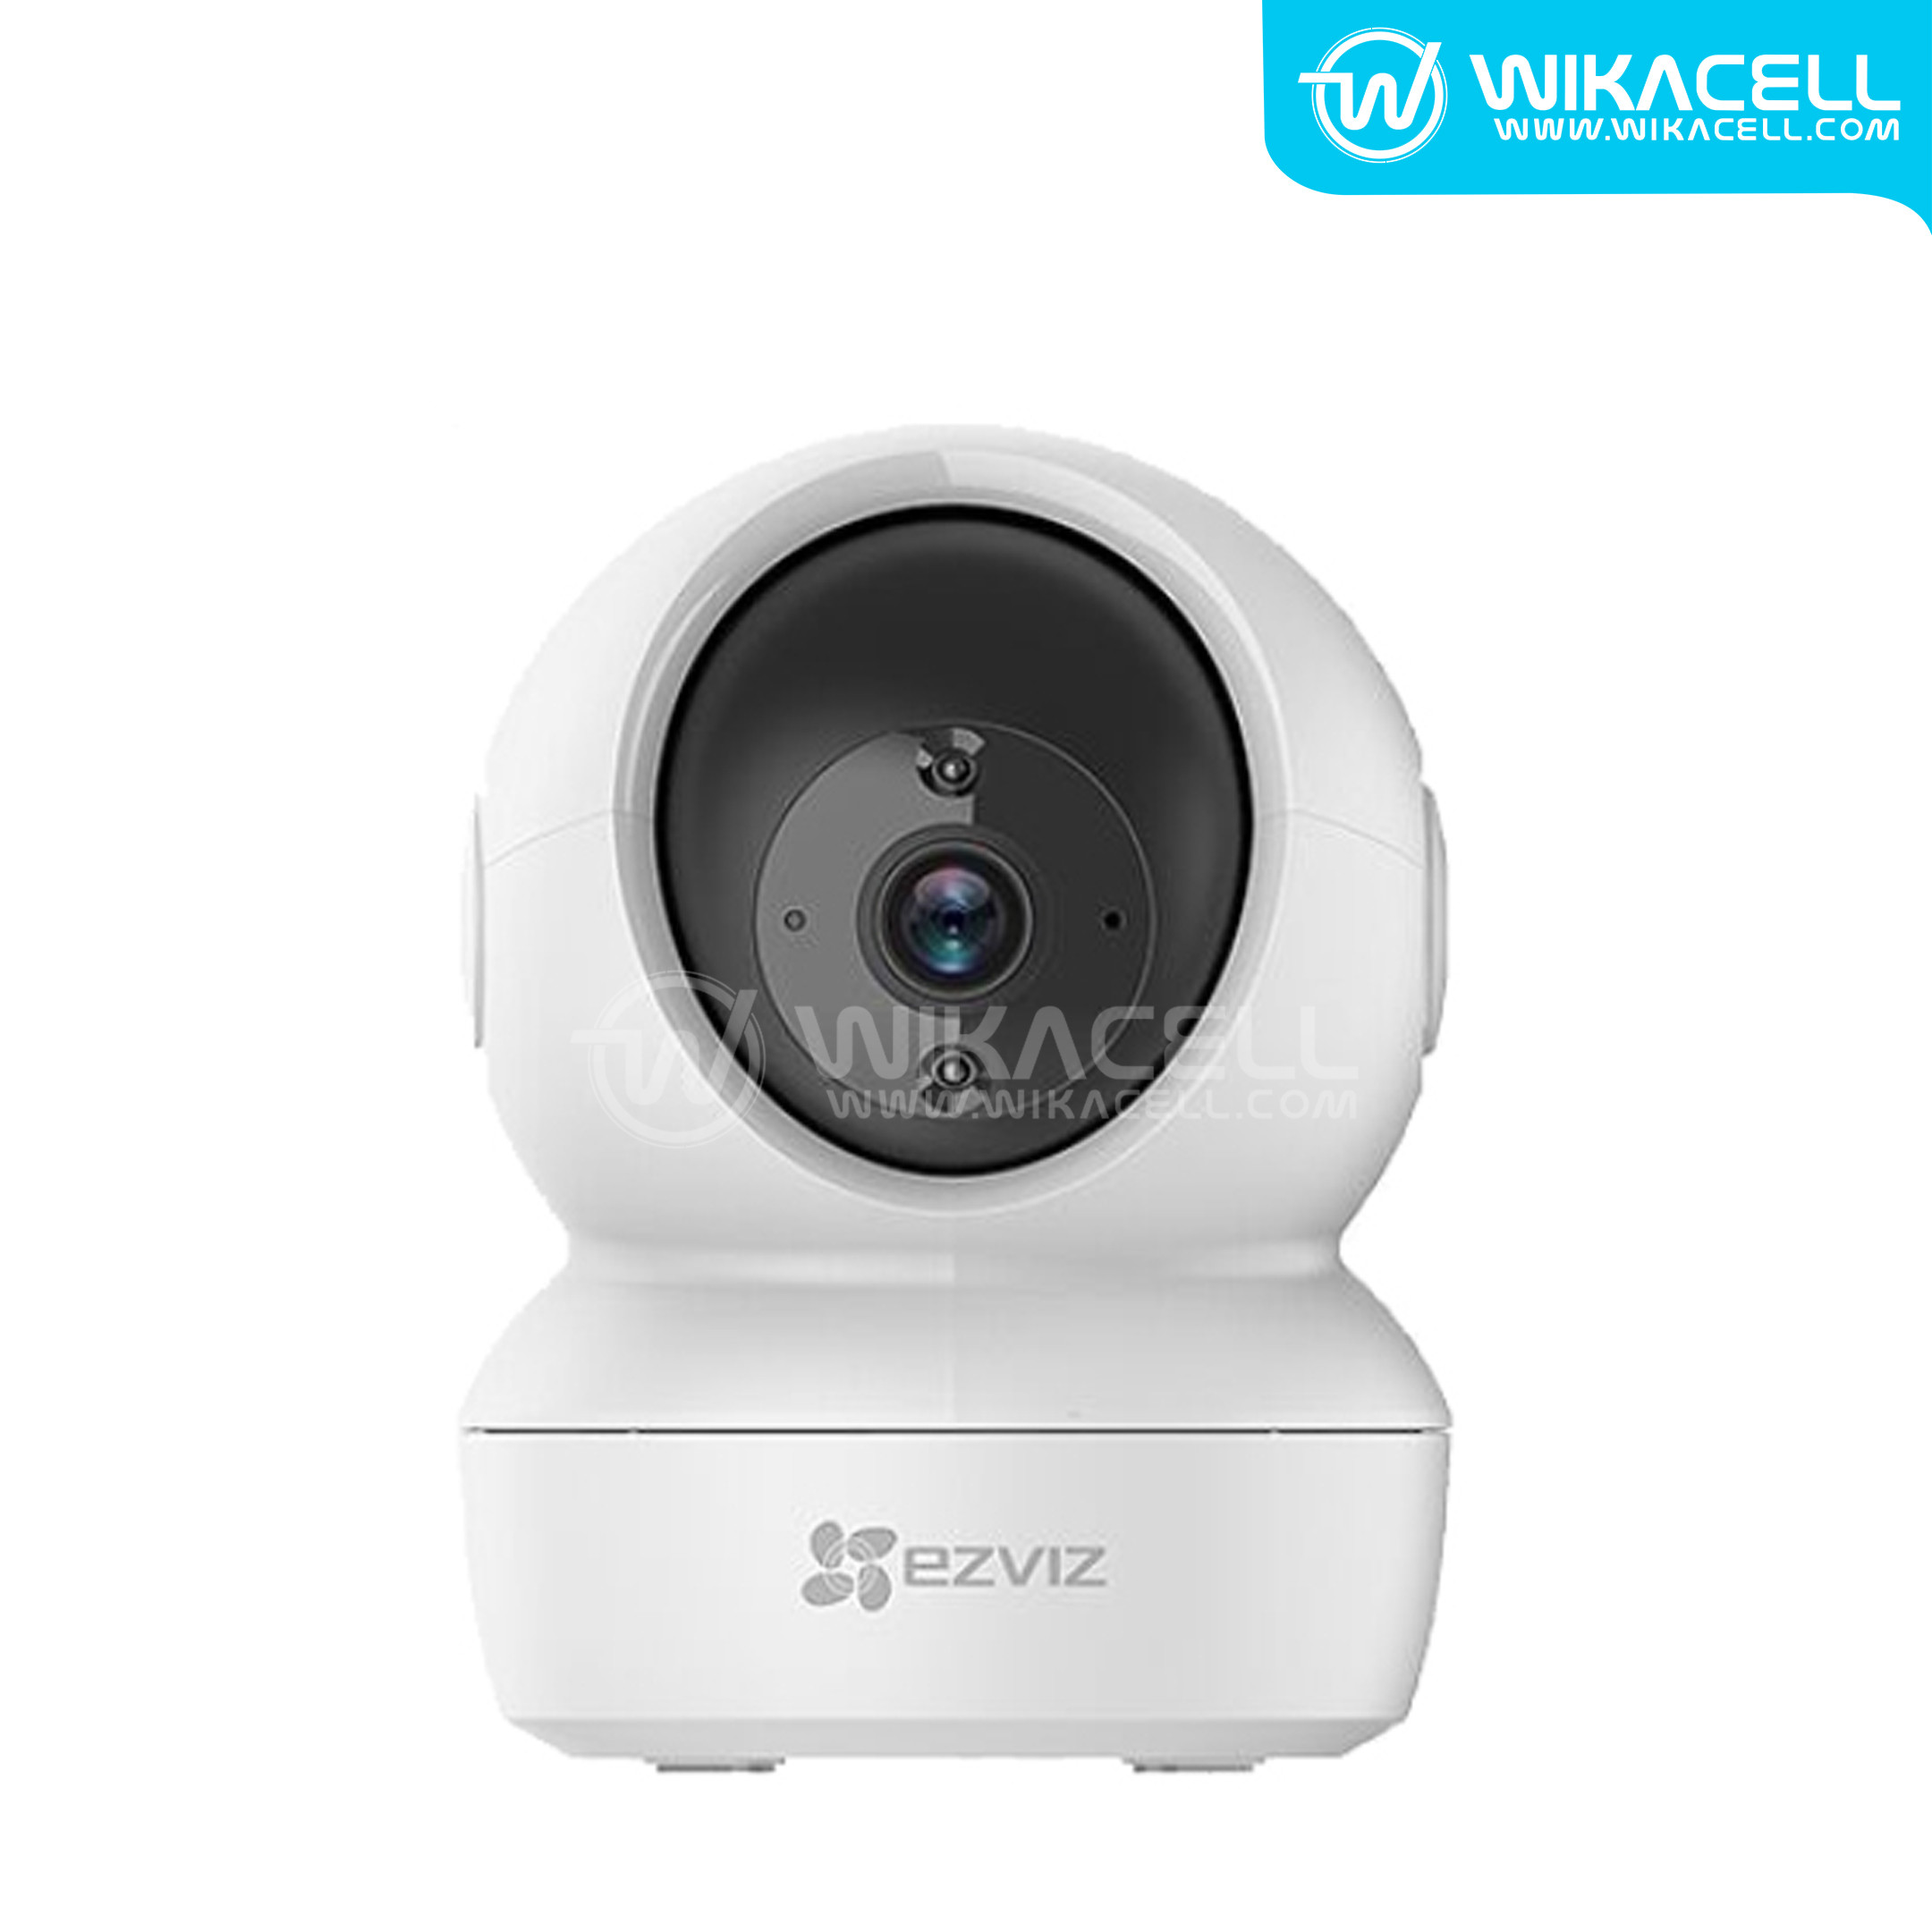 EZVIZ CCTV With Smart IR Function White (C6N 1080P)